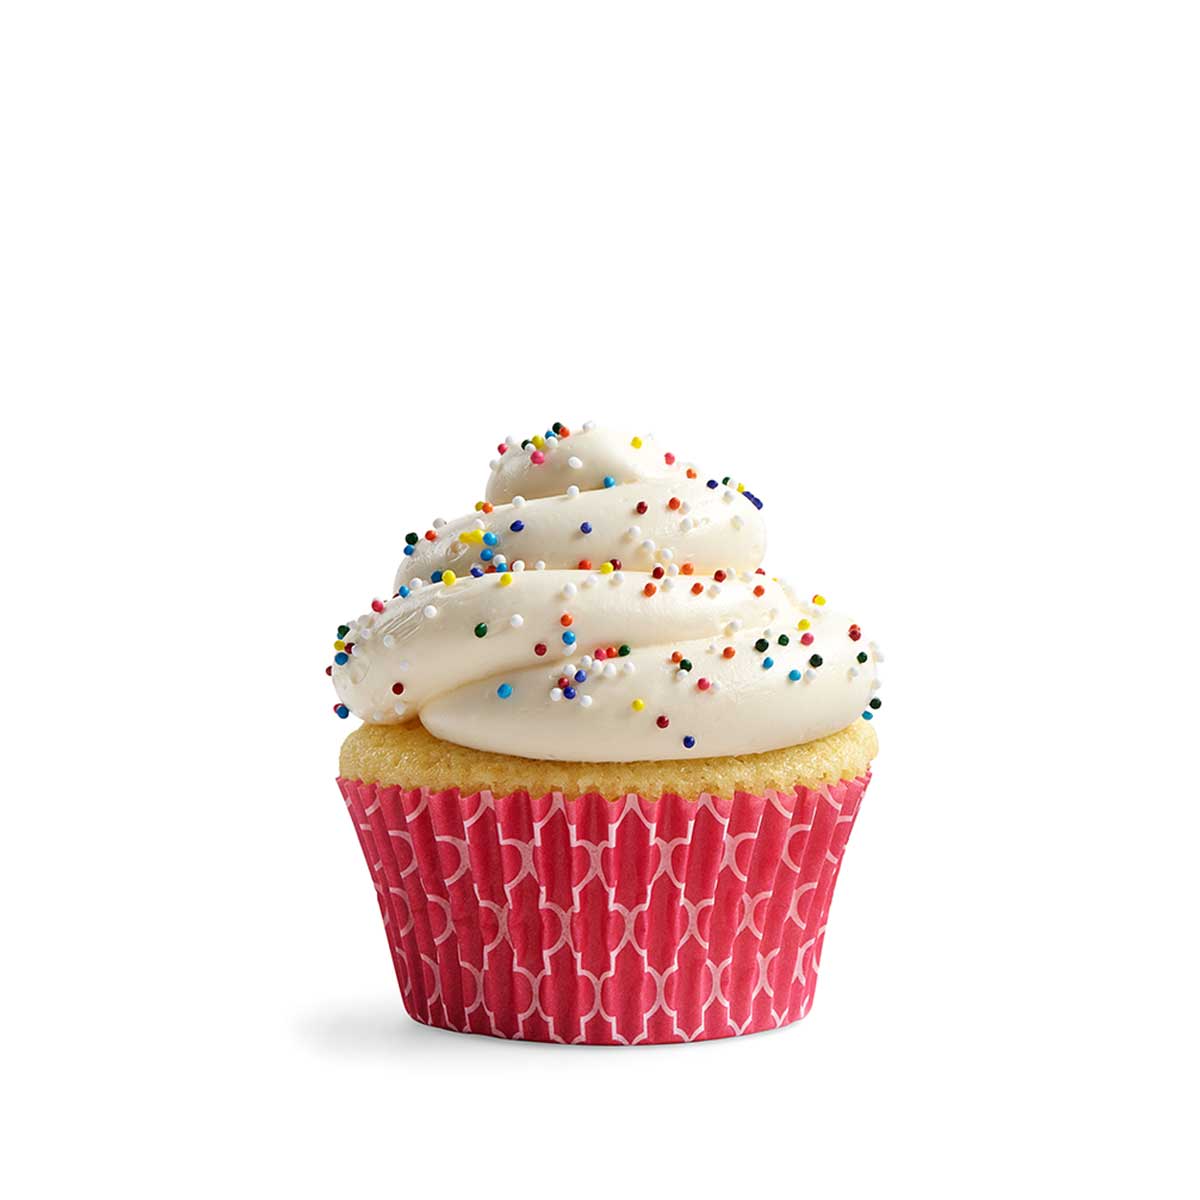 En klassisk vaniljcupcake med cream cheese frosting med regnbågsströssel, i ett rosa cupcakepapper.